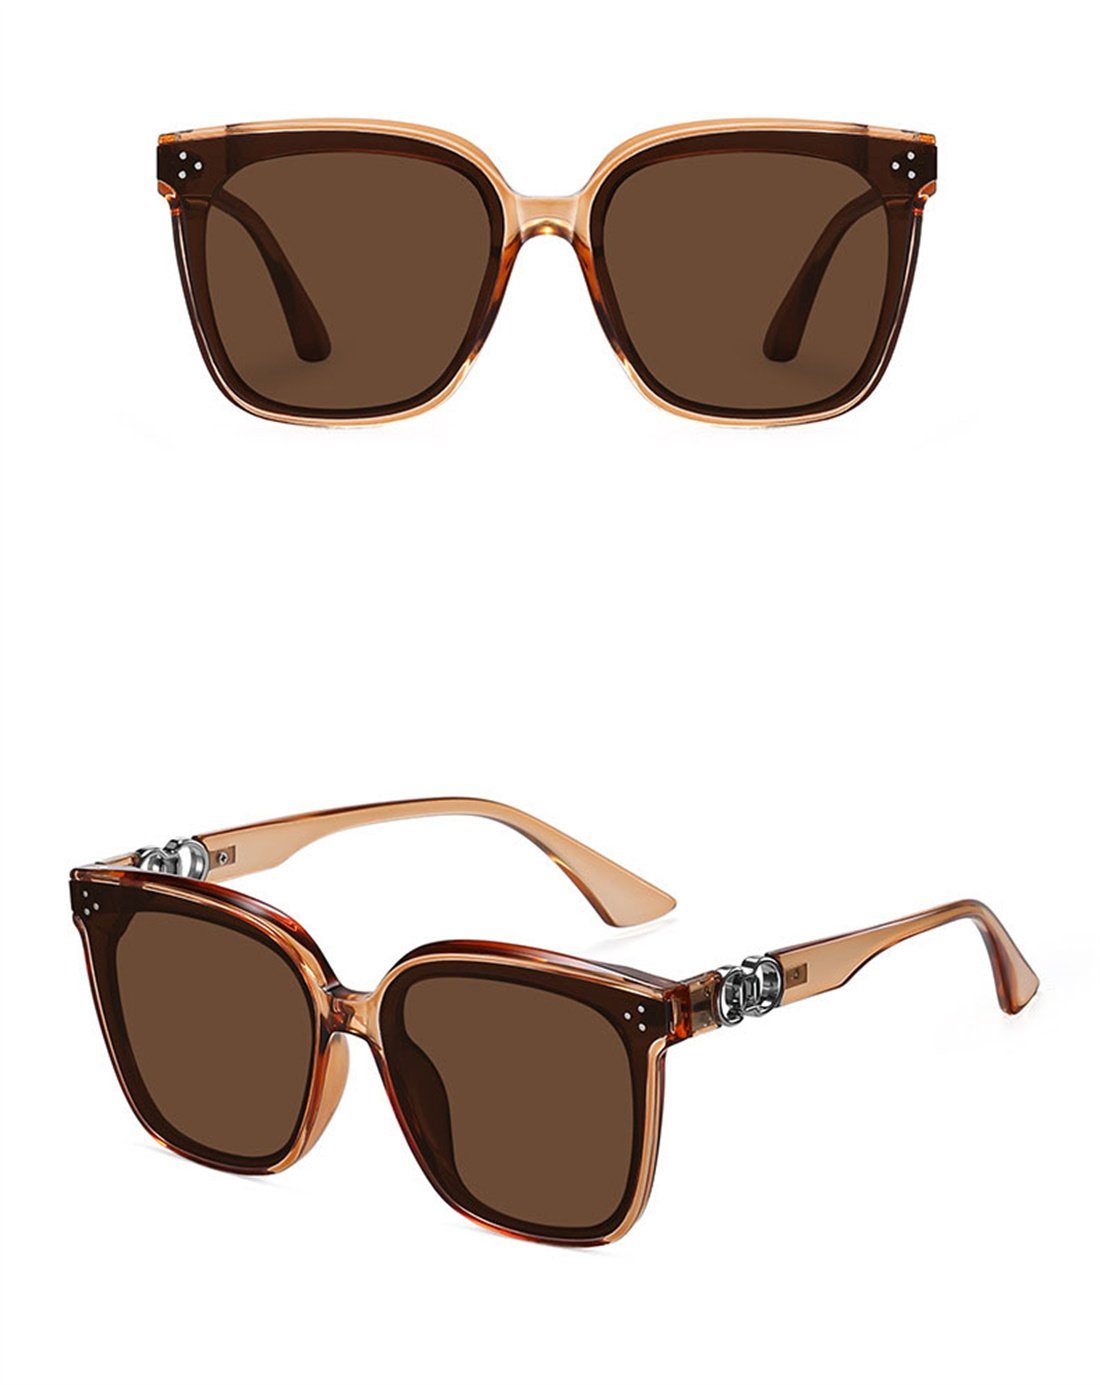 DÖRÖY Sonnenbrille Outdoor-Sonnenbrillen Mode-Sonnenbrillen für und C Männer Frauen